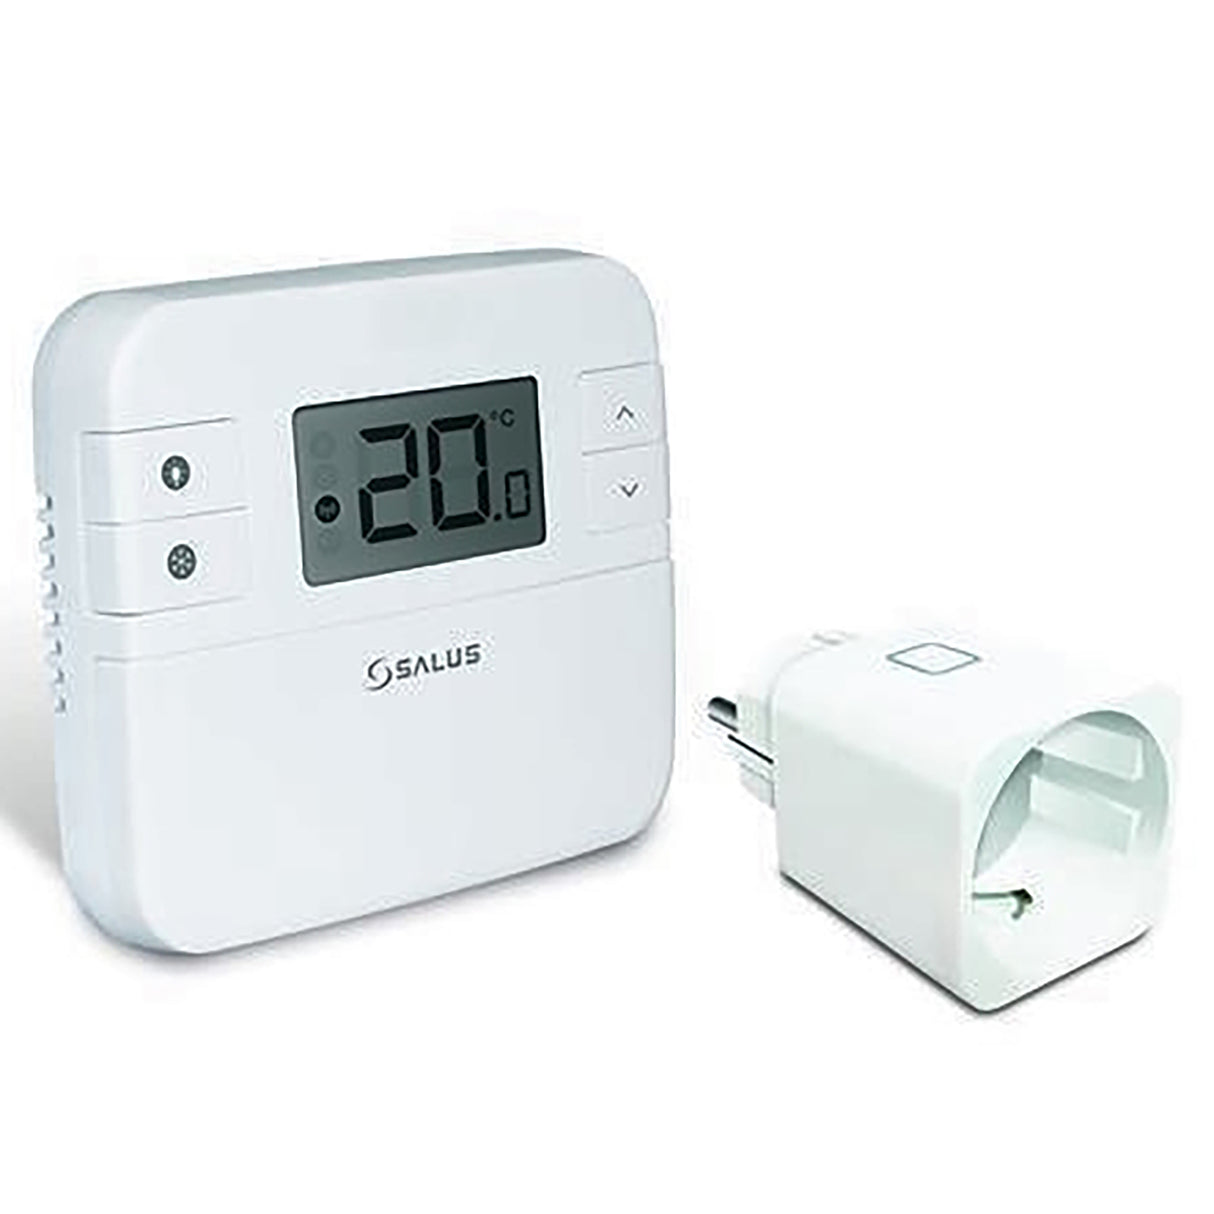 Melkroboter mit Thermostat und Infrarotheizung